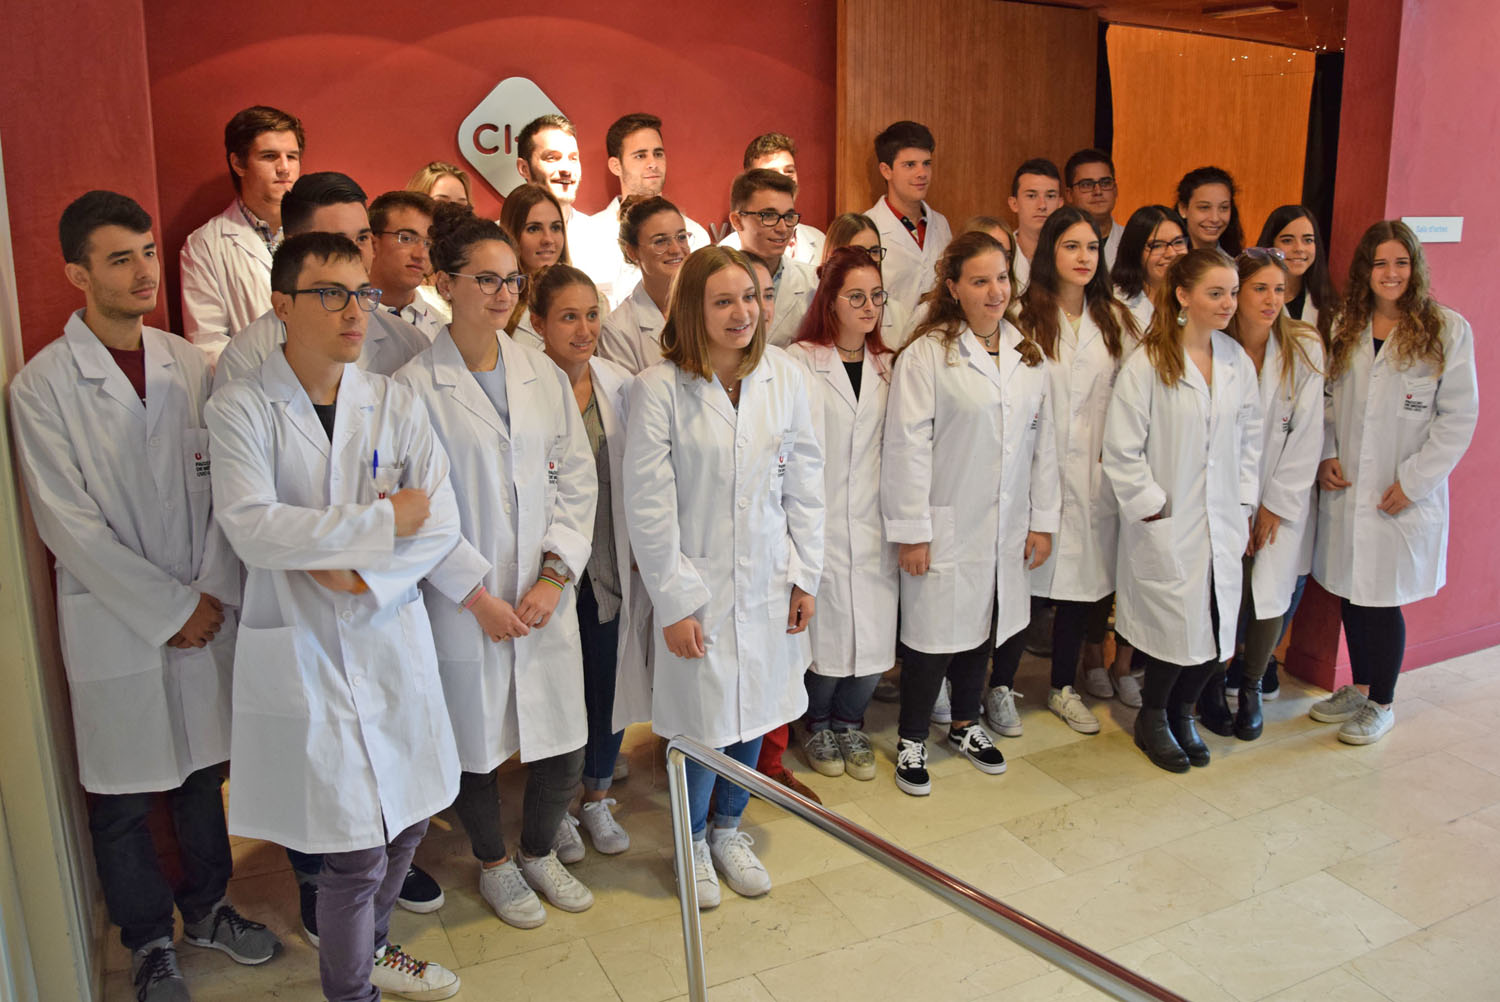 Fotografia de grup dels estudiants de Medicina assignats a fer la pràctica a l'HUV